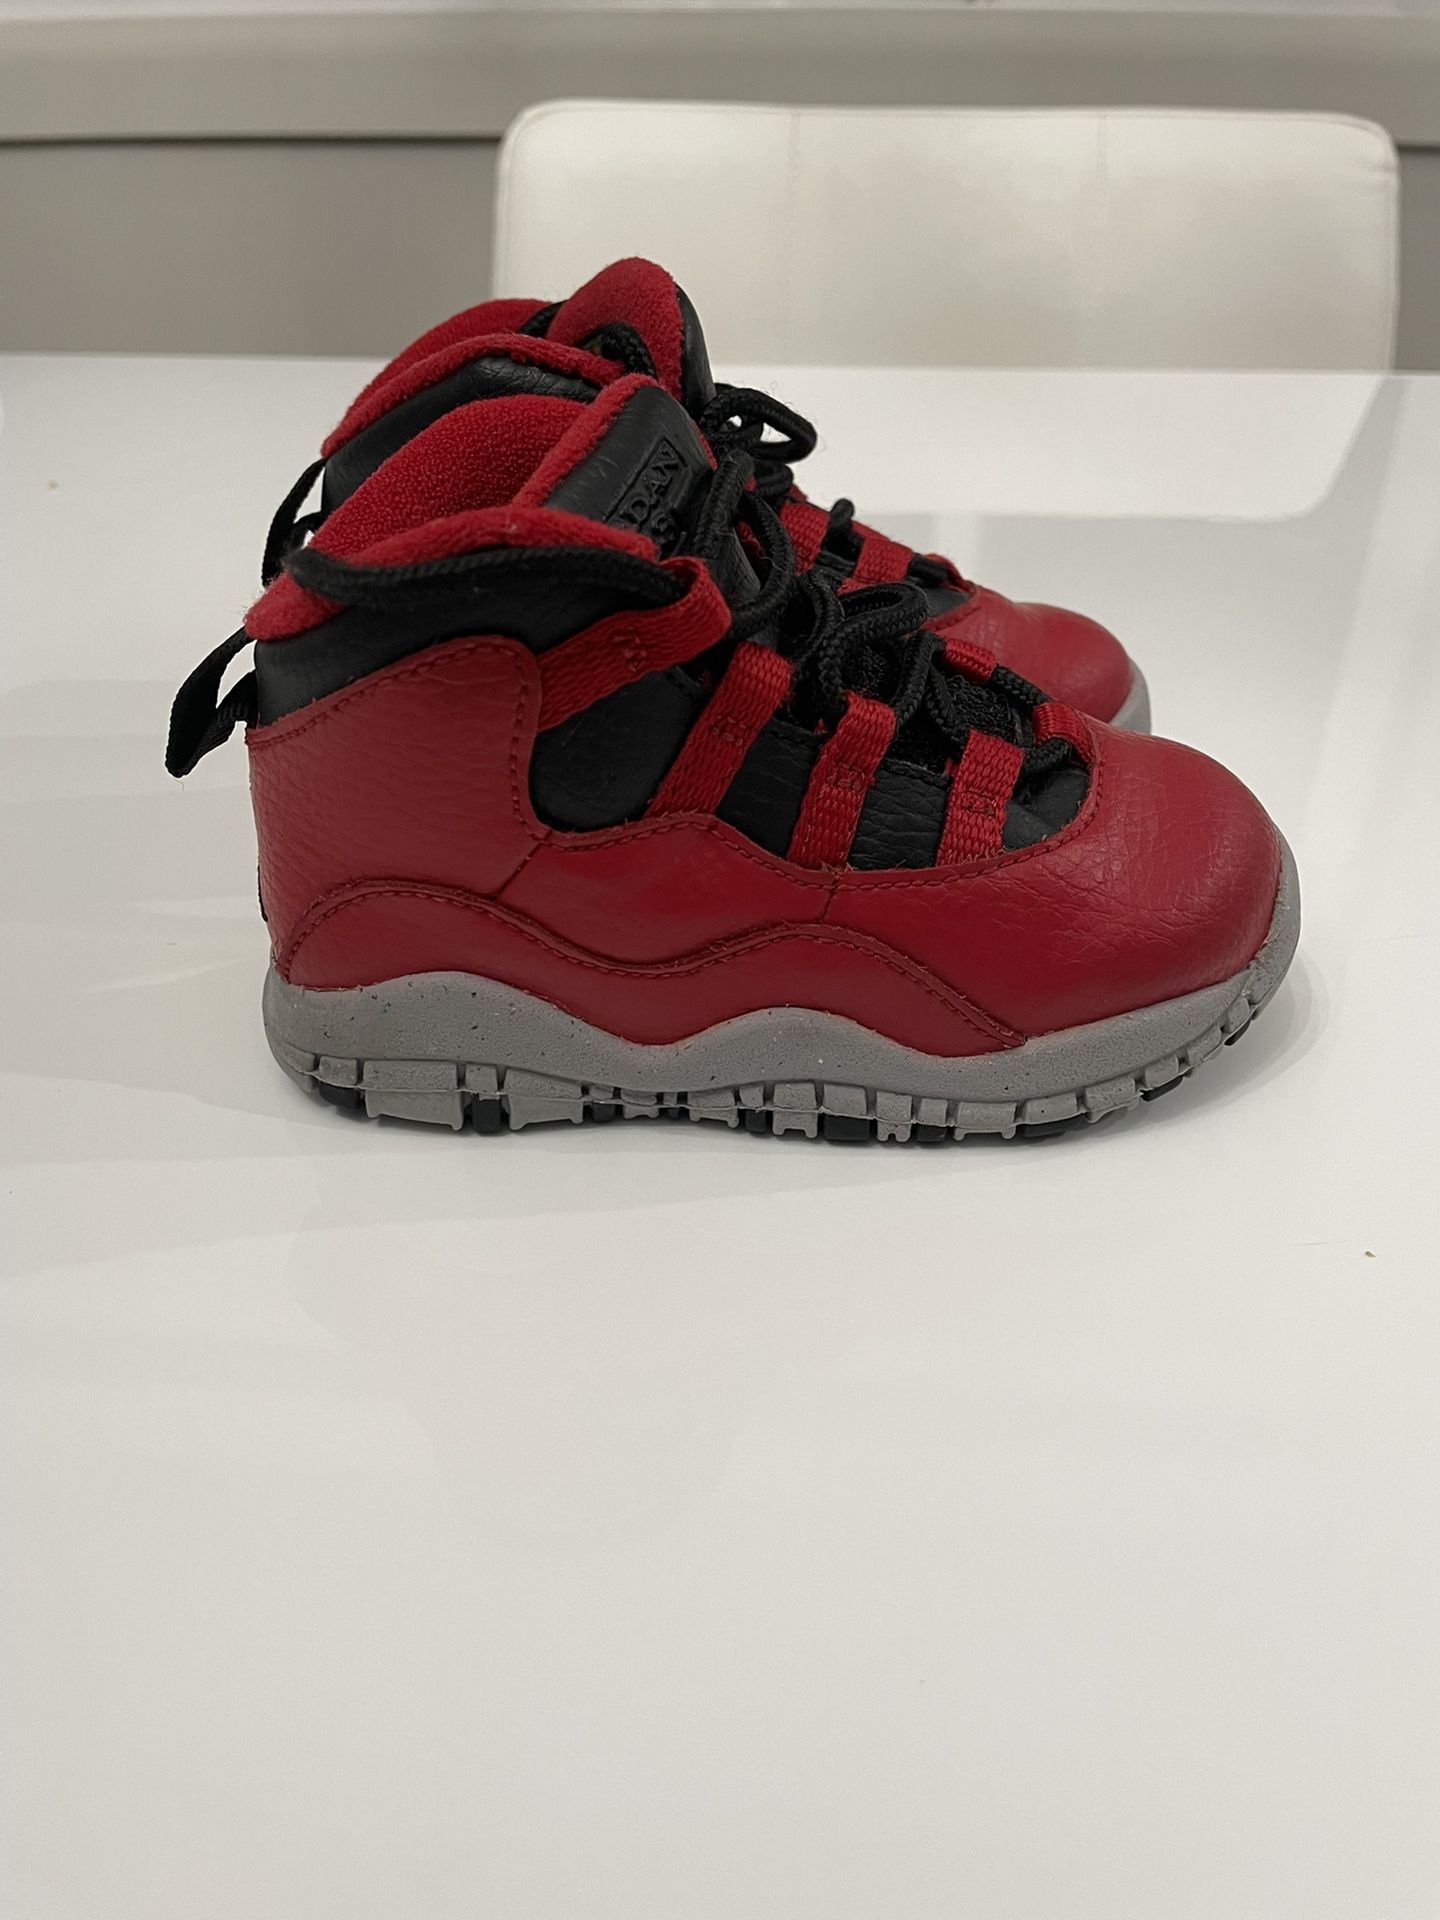 Jordan 9 Size 6c 